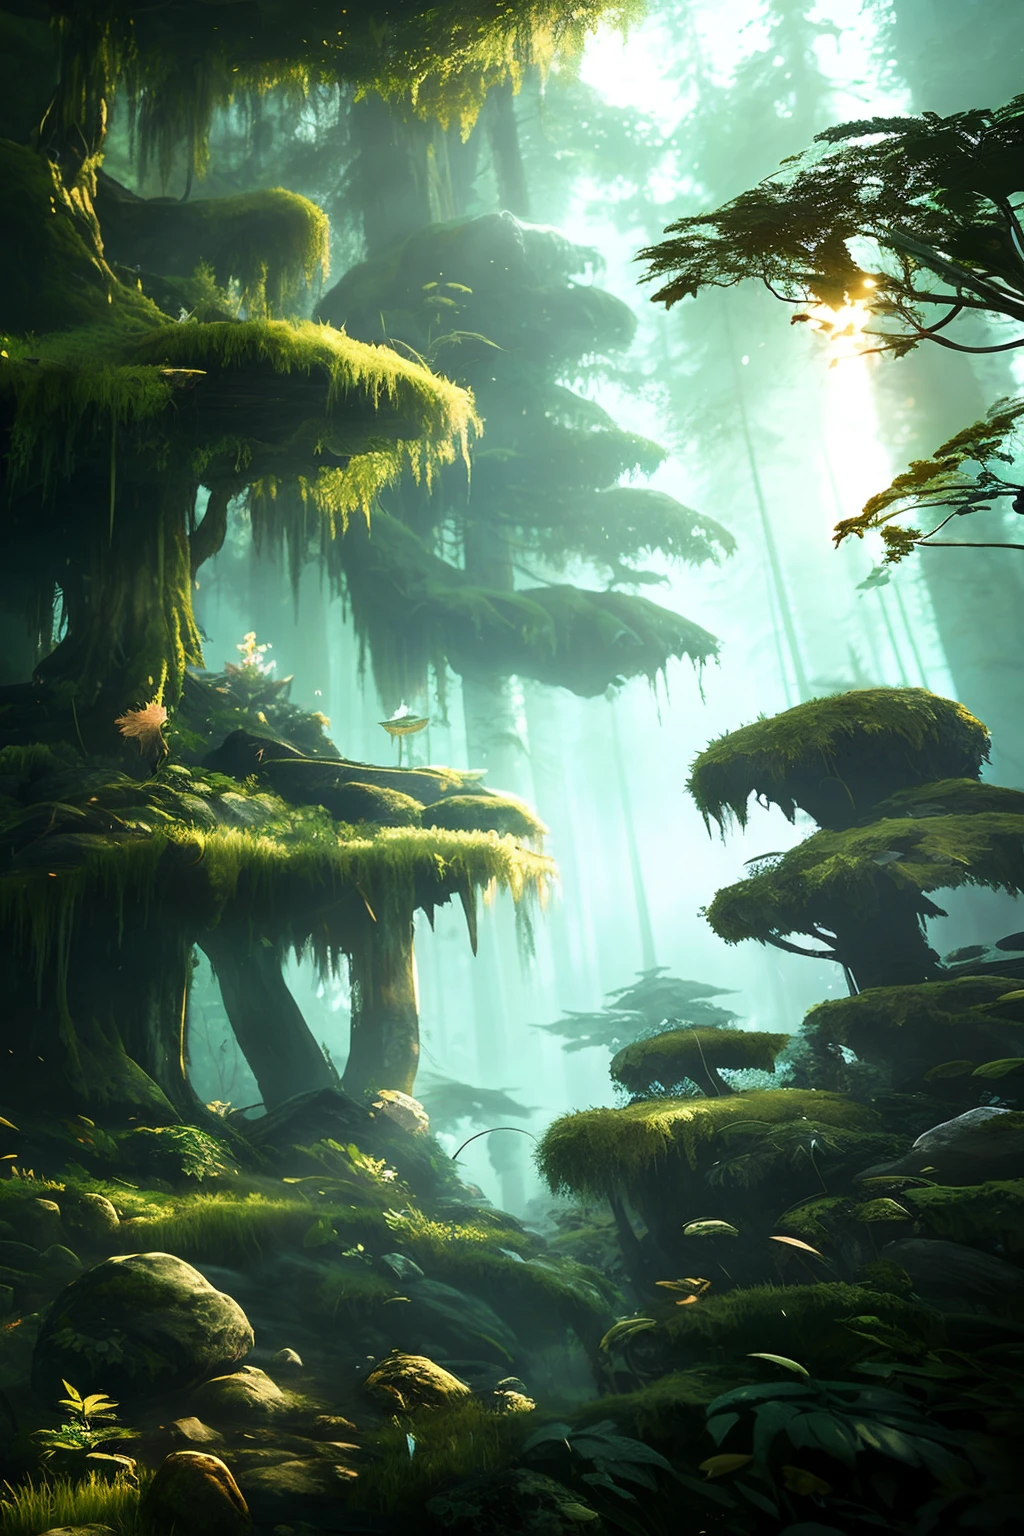 深いエルダー成長林の探検家、複雑に詳細化された自然なボリューム照明、ファンタジーな雰囲気